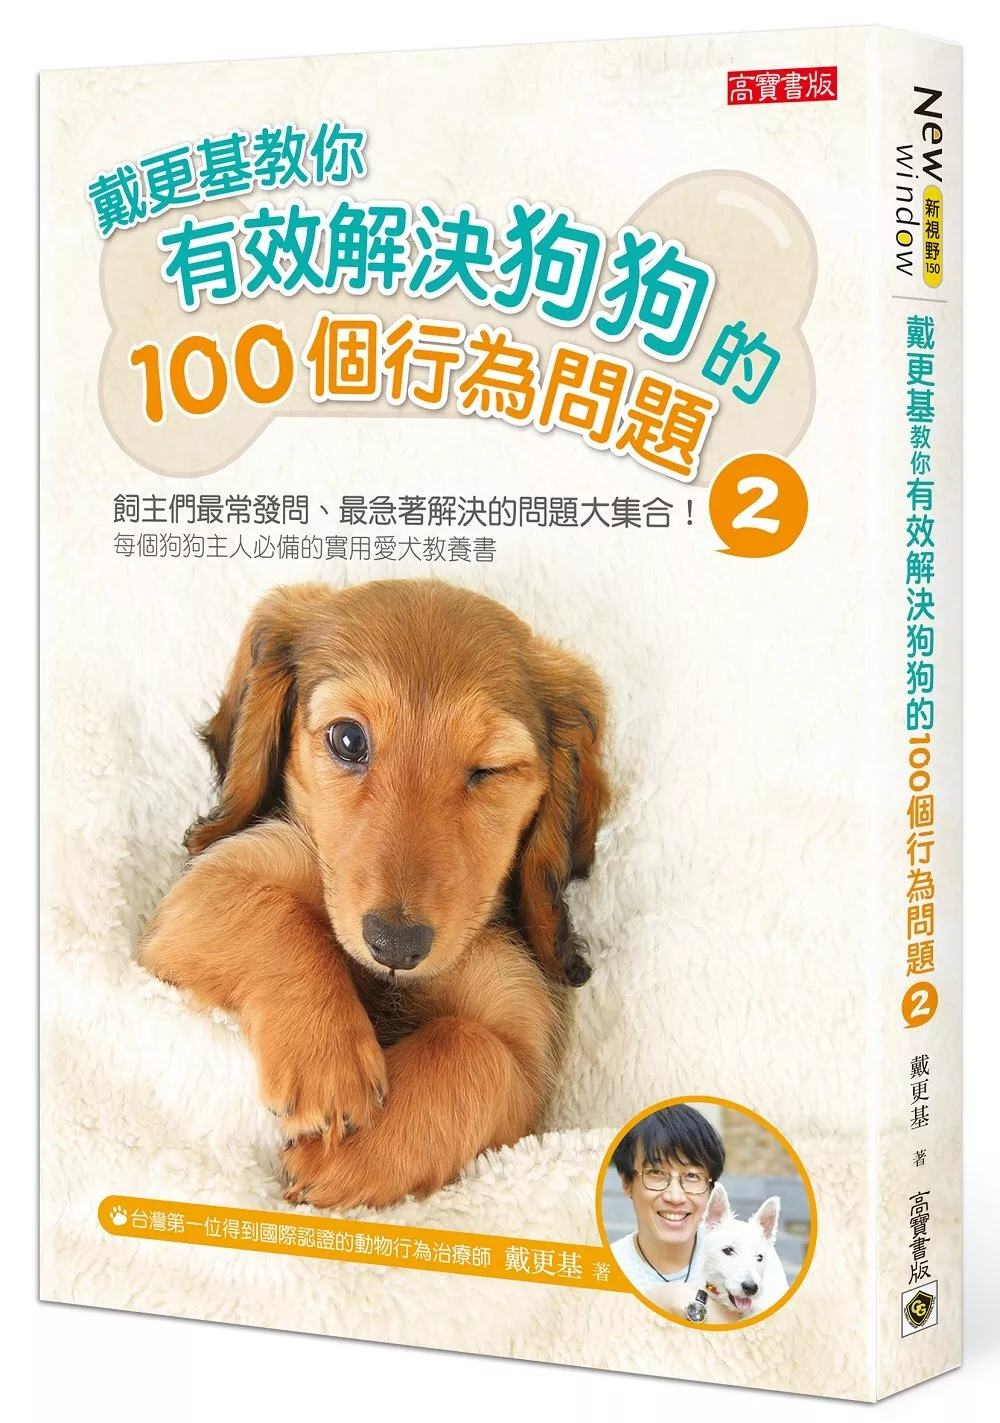 戴更基教你有效解決狗狗的100個行為問題 (2)